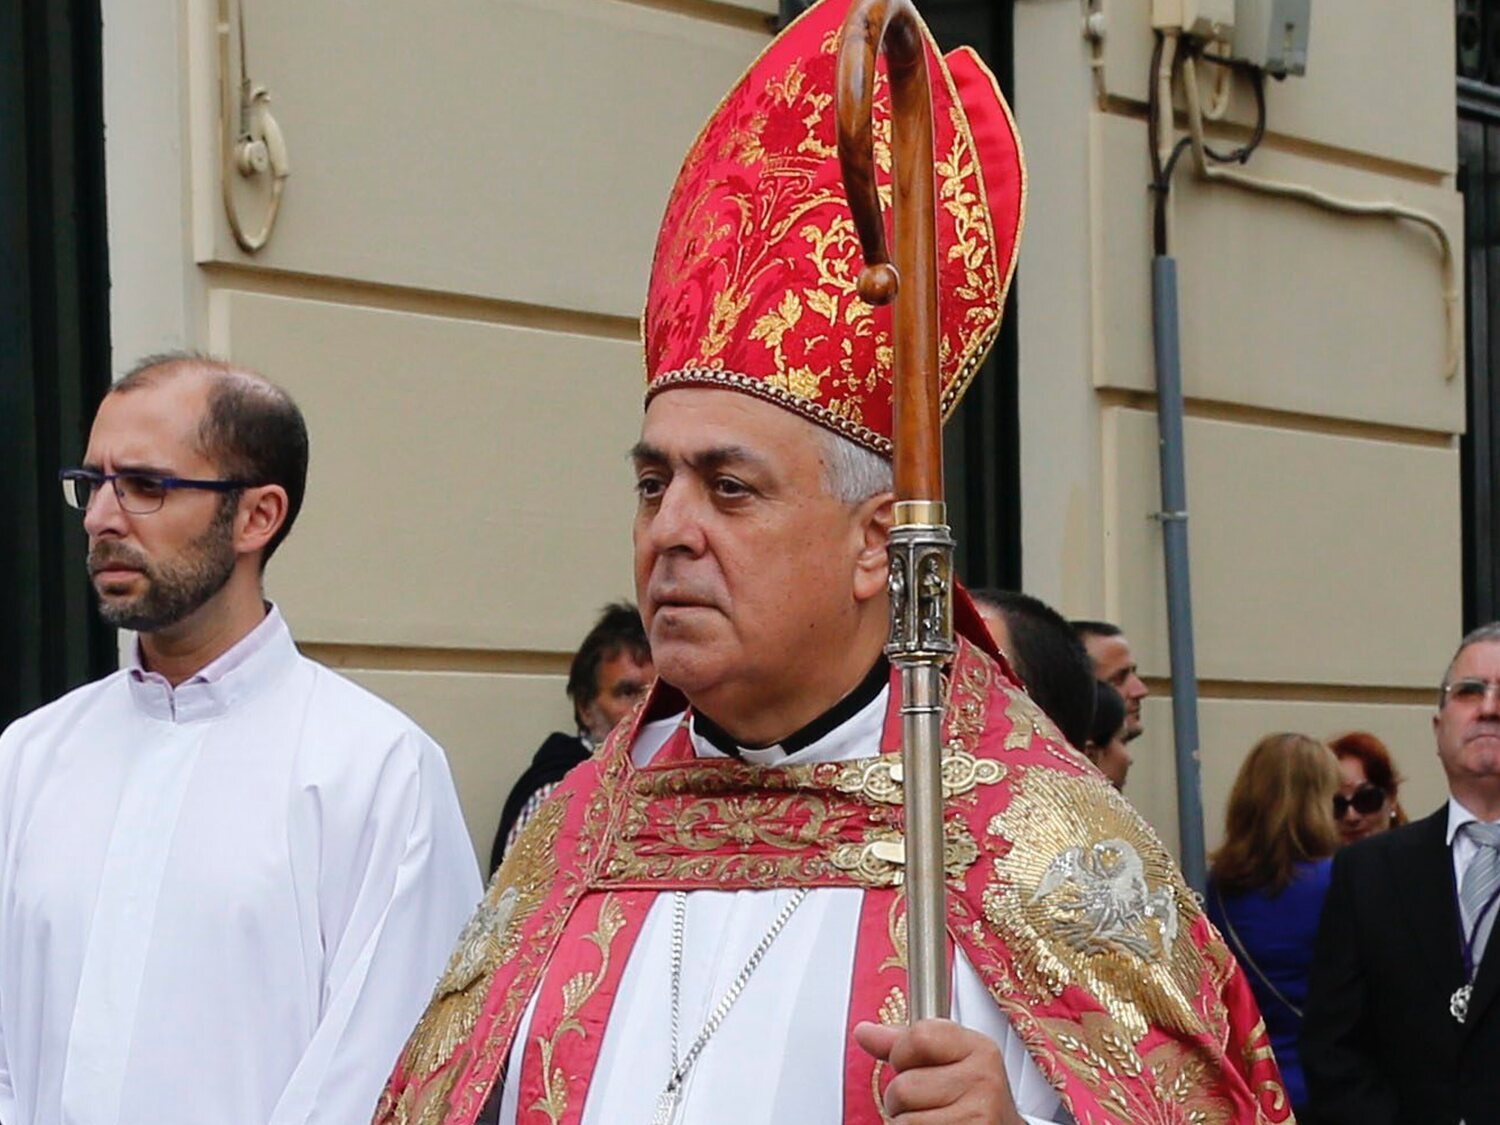 La Fiscalía investiga por posible delito de odio al obispo de Tenerife por sus comentarios homófobos